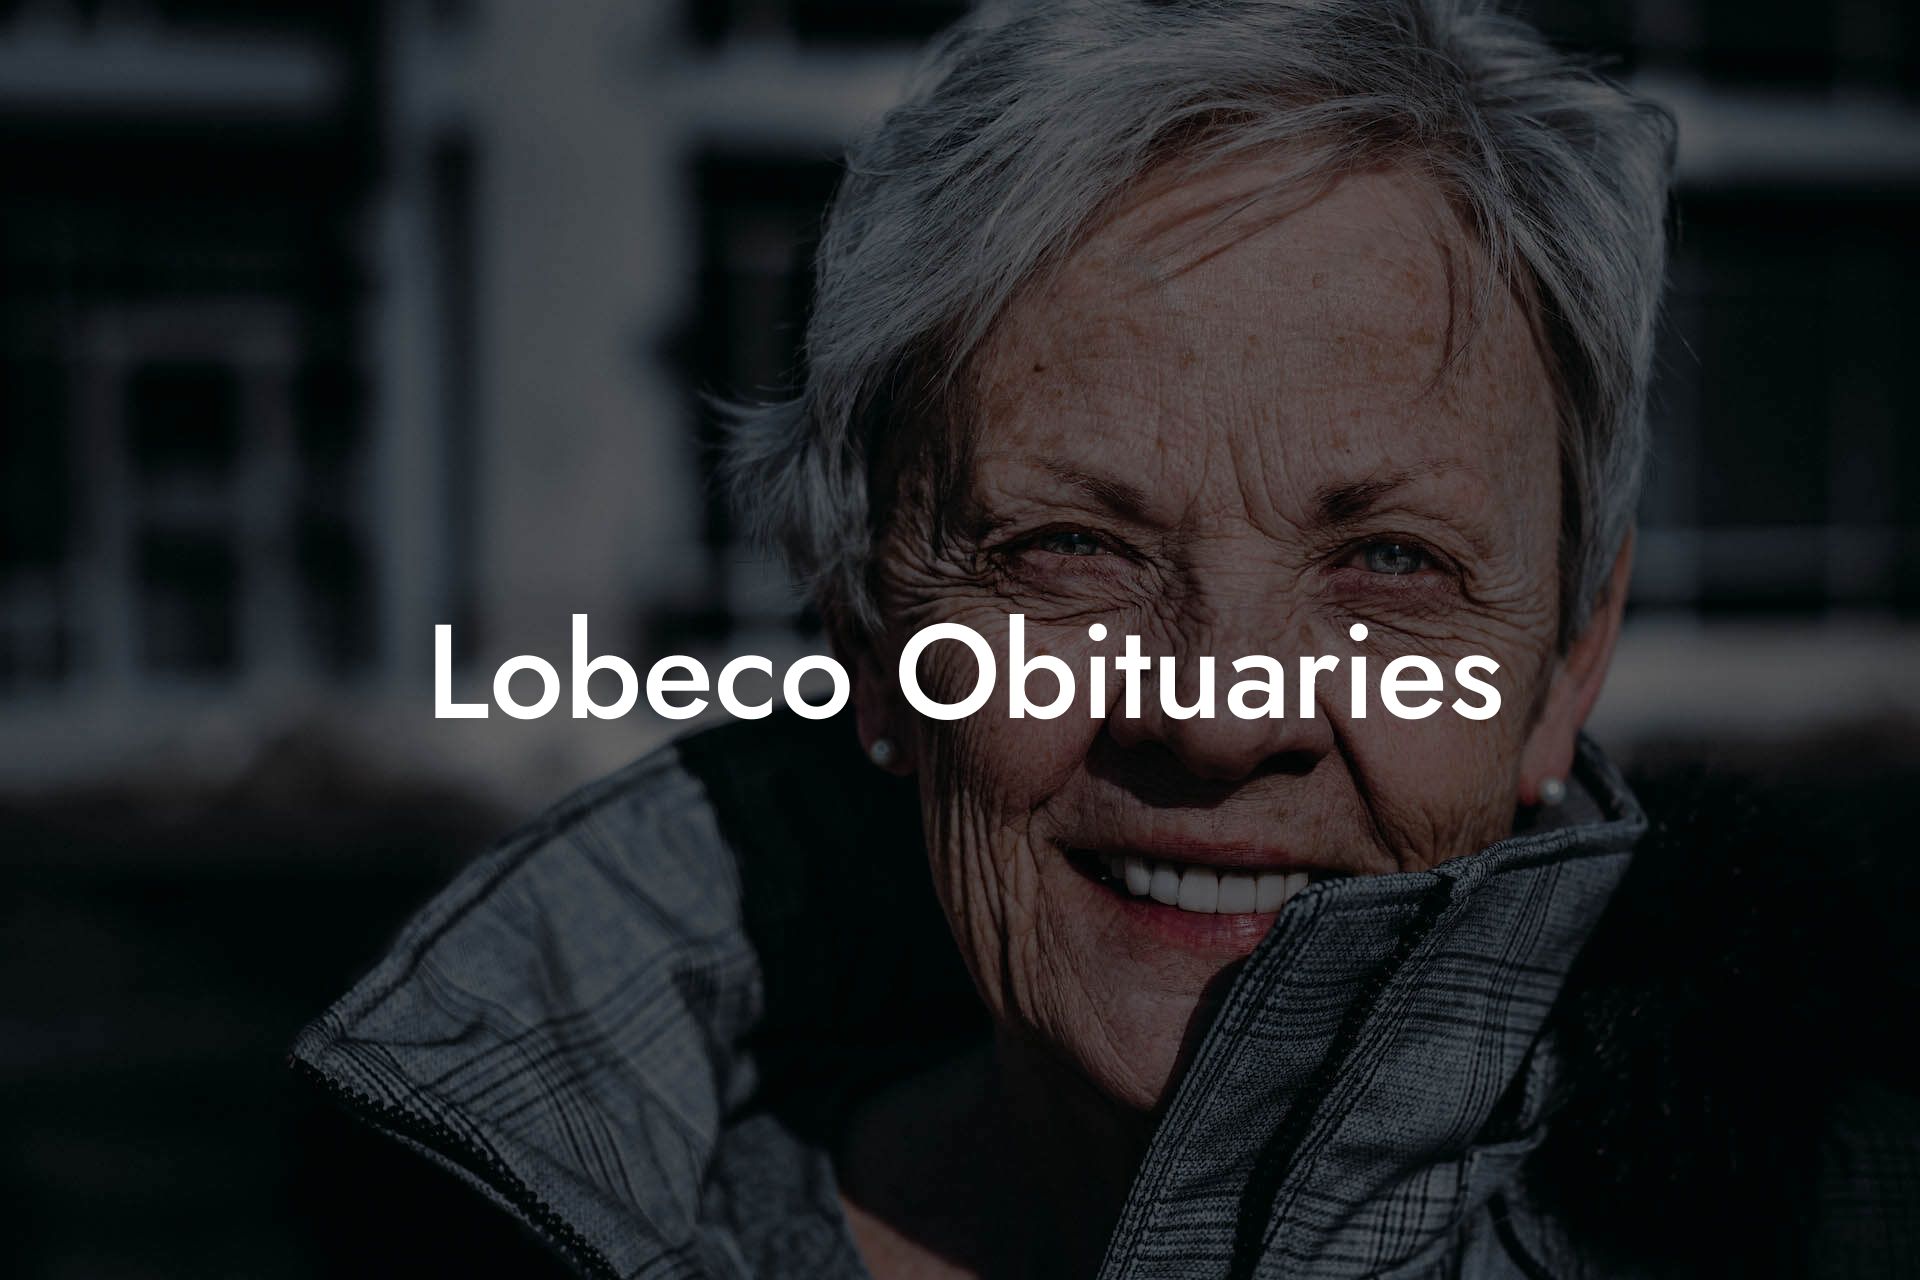 Lobeco Obituaries